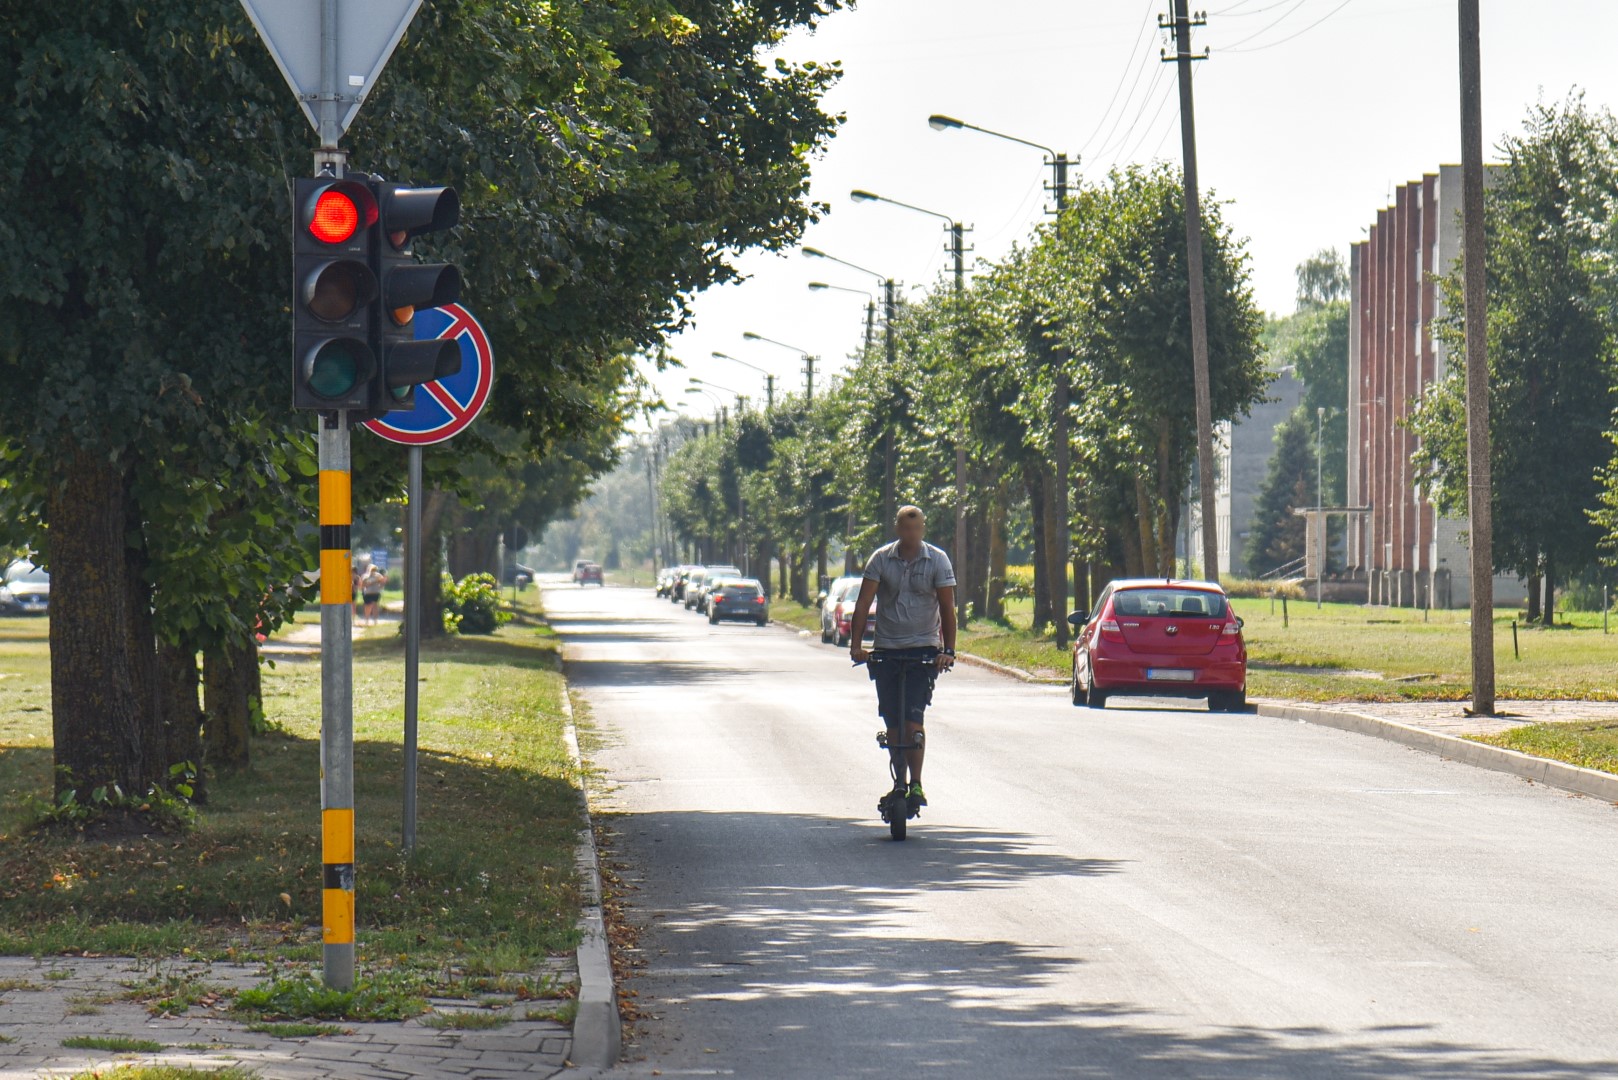 Pirmąją vasaros dieną įsigaliojusi Kelių eismo taisyklių naujovė – dviračių gatvės – mūsų šalyje sparčiai kelio nesiskina.